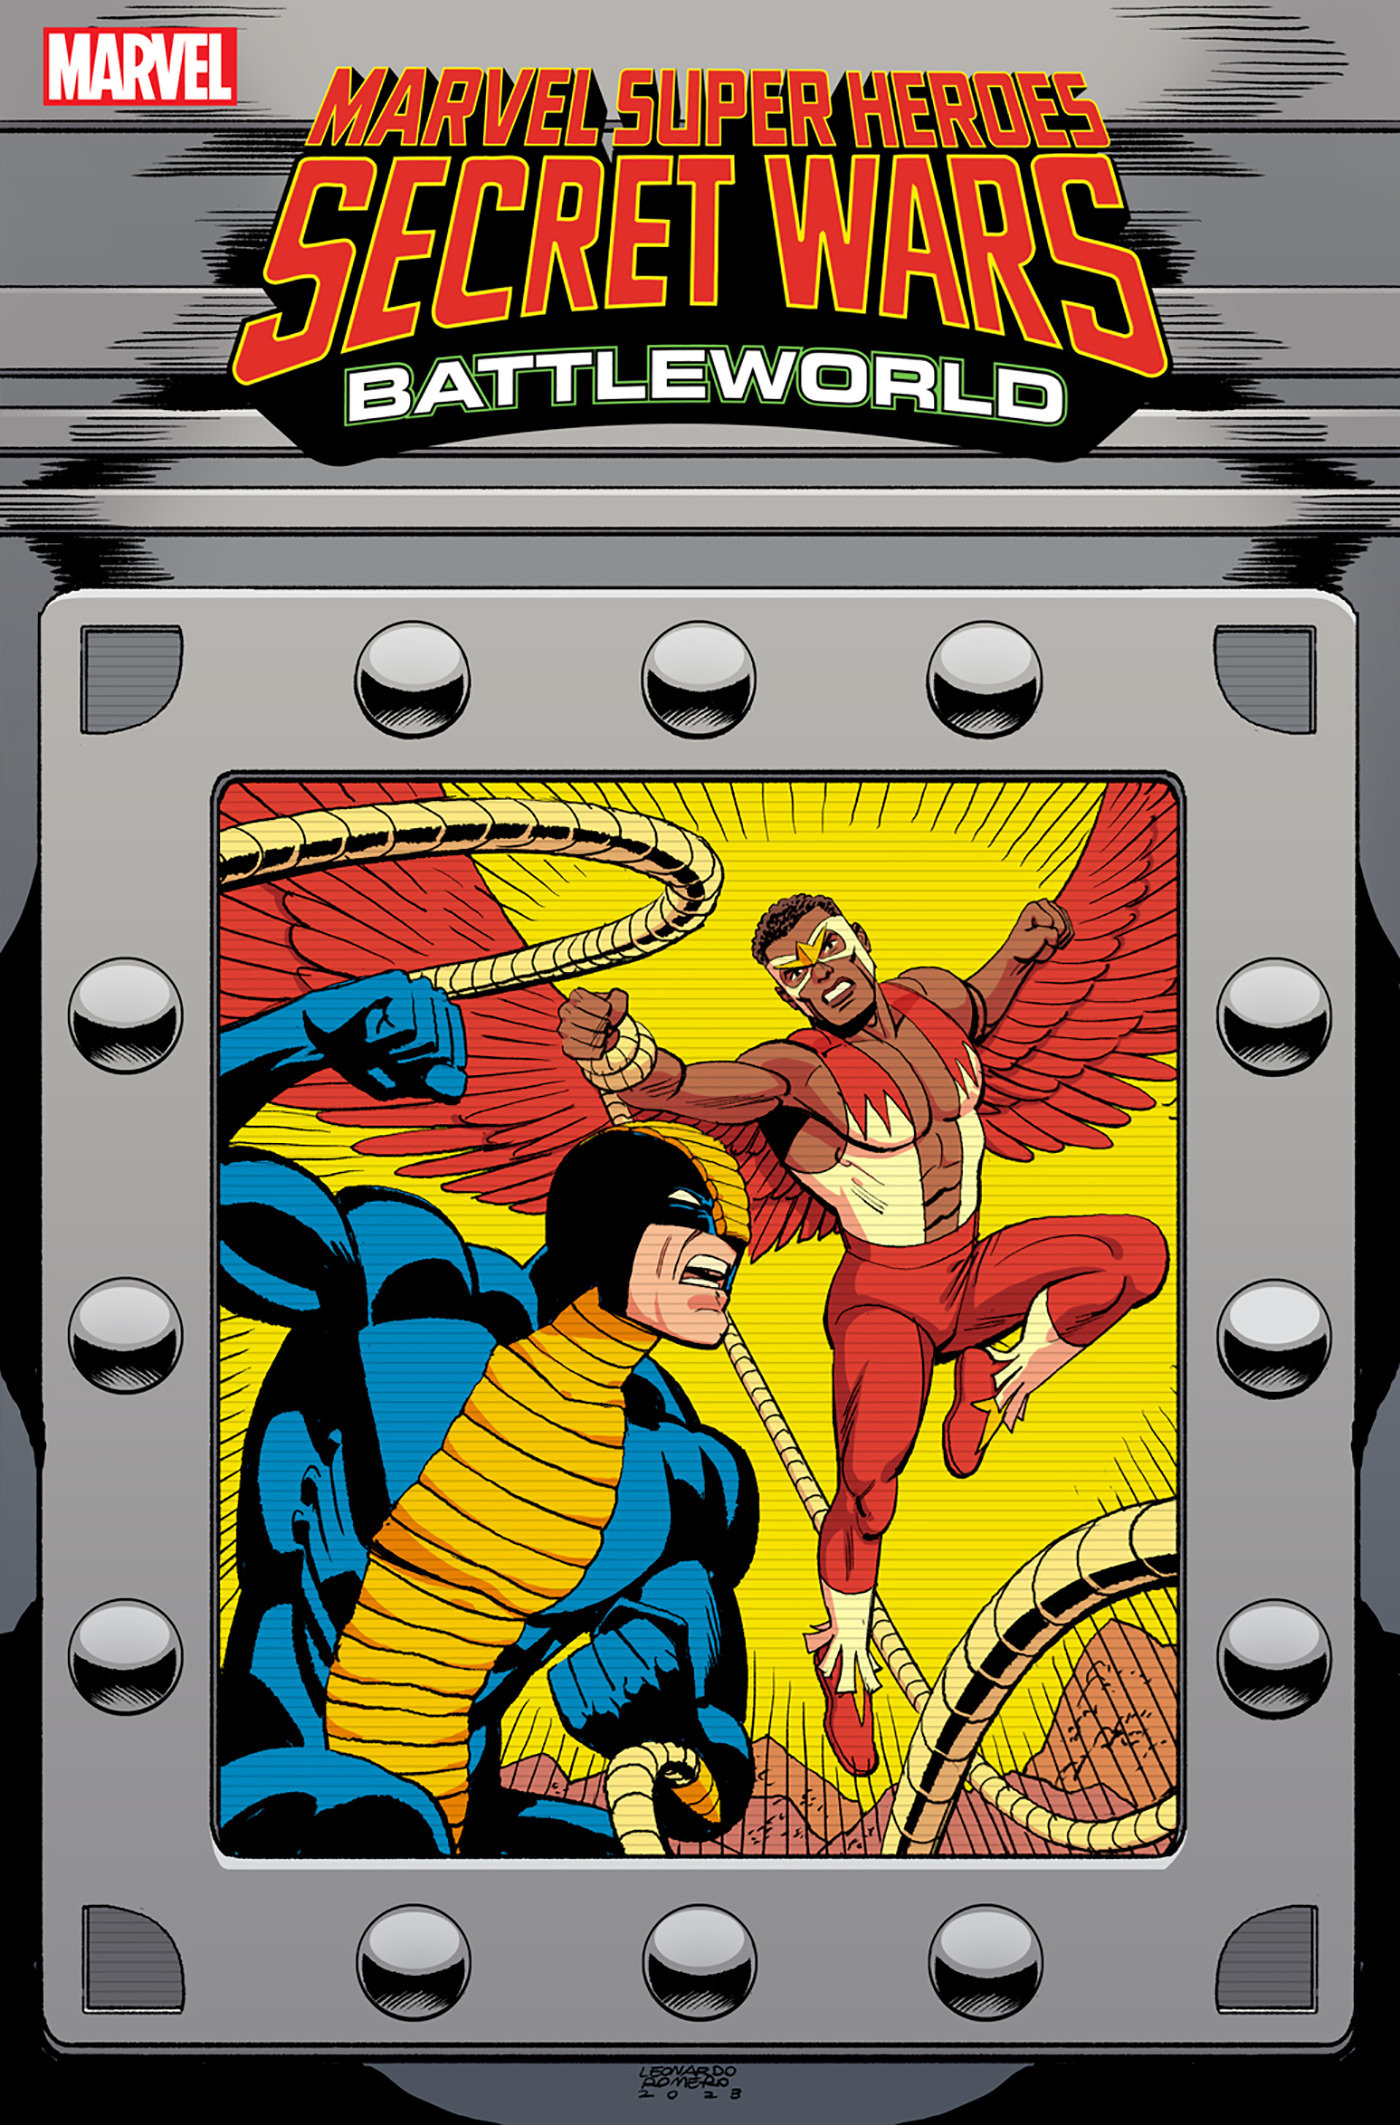 Marvel Super Heroes Secret Wars Battleworld #3 Leonardo Romero Variant